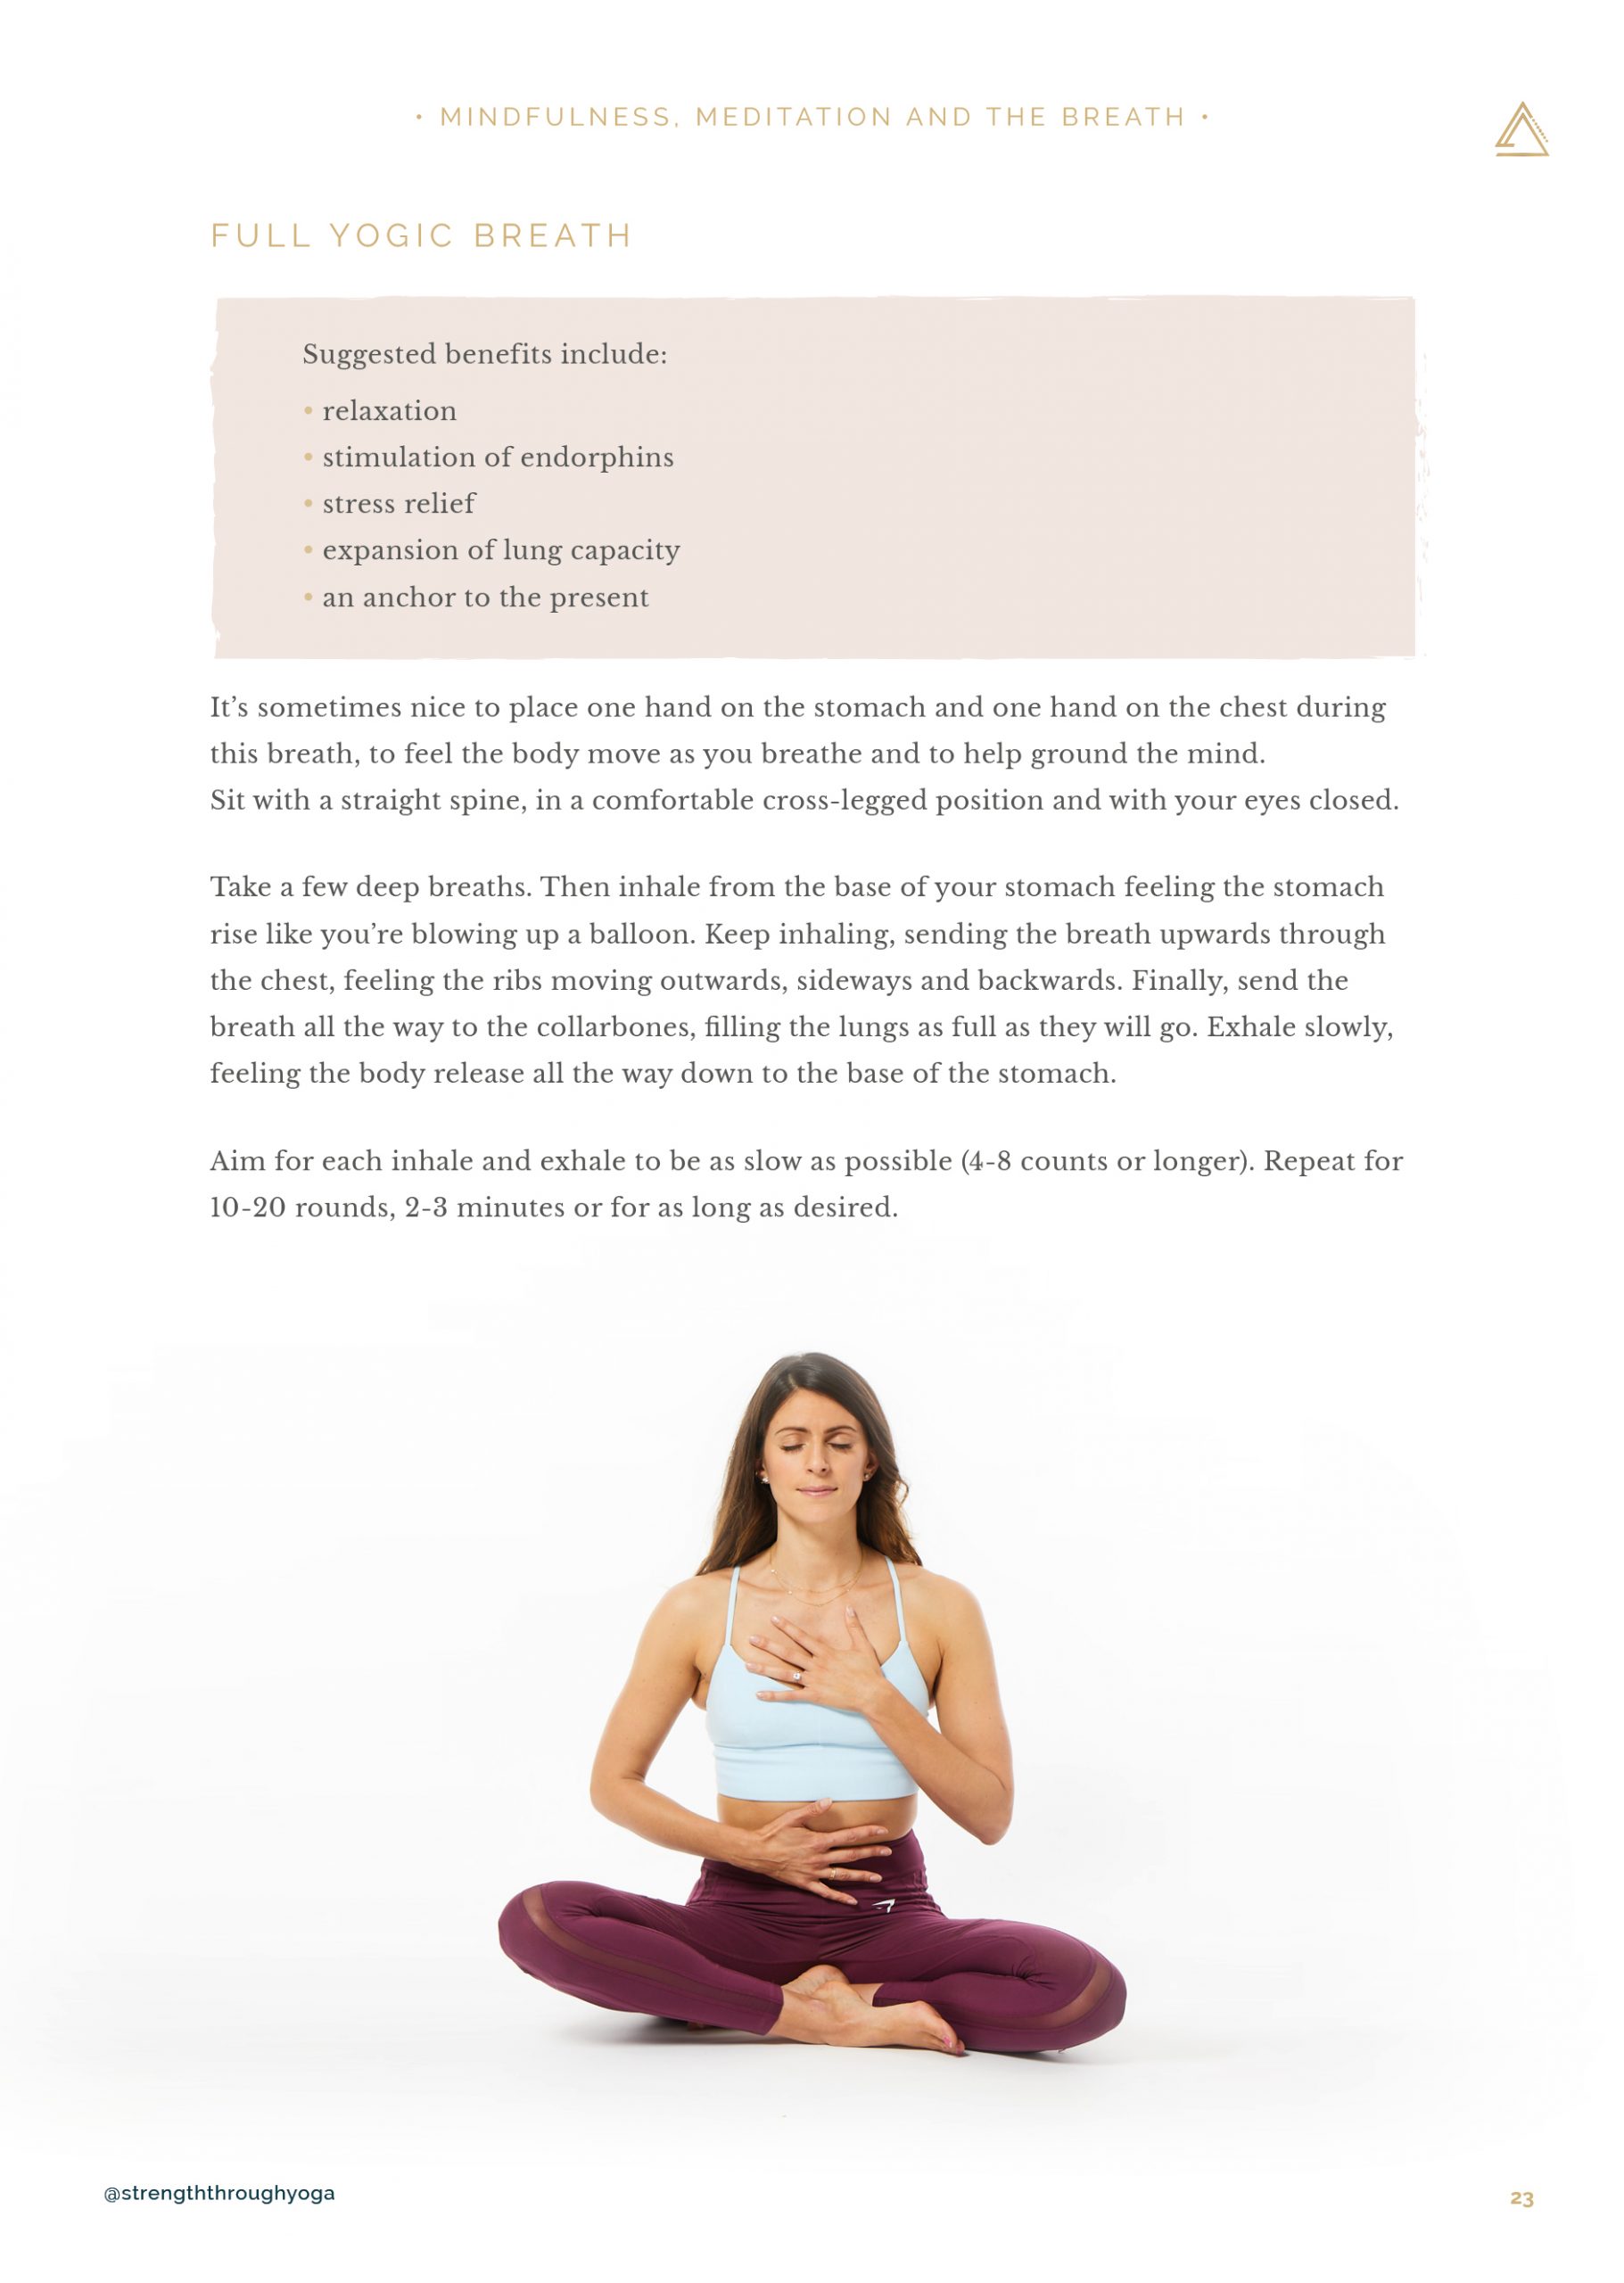 Strength Through Yoga - The Circuits (eGuide) - Hannah Barrett Yoga